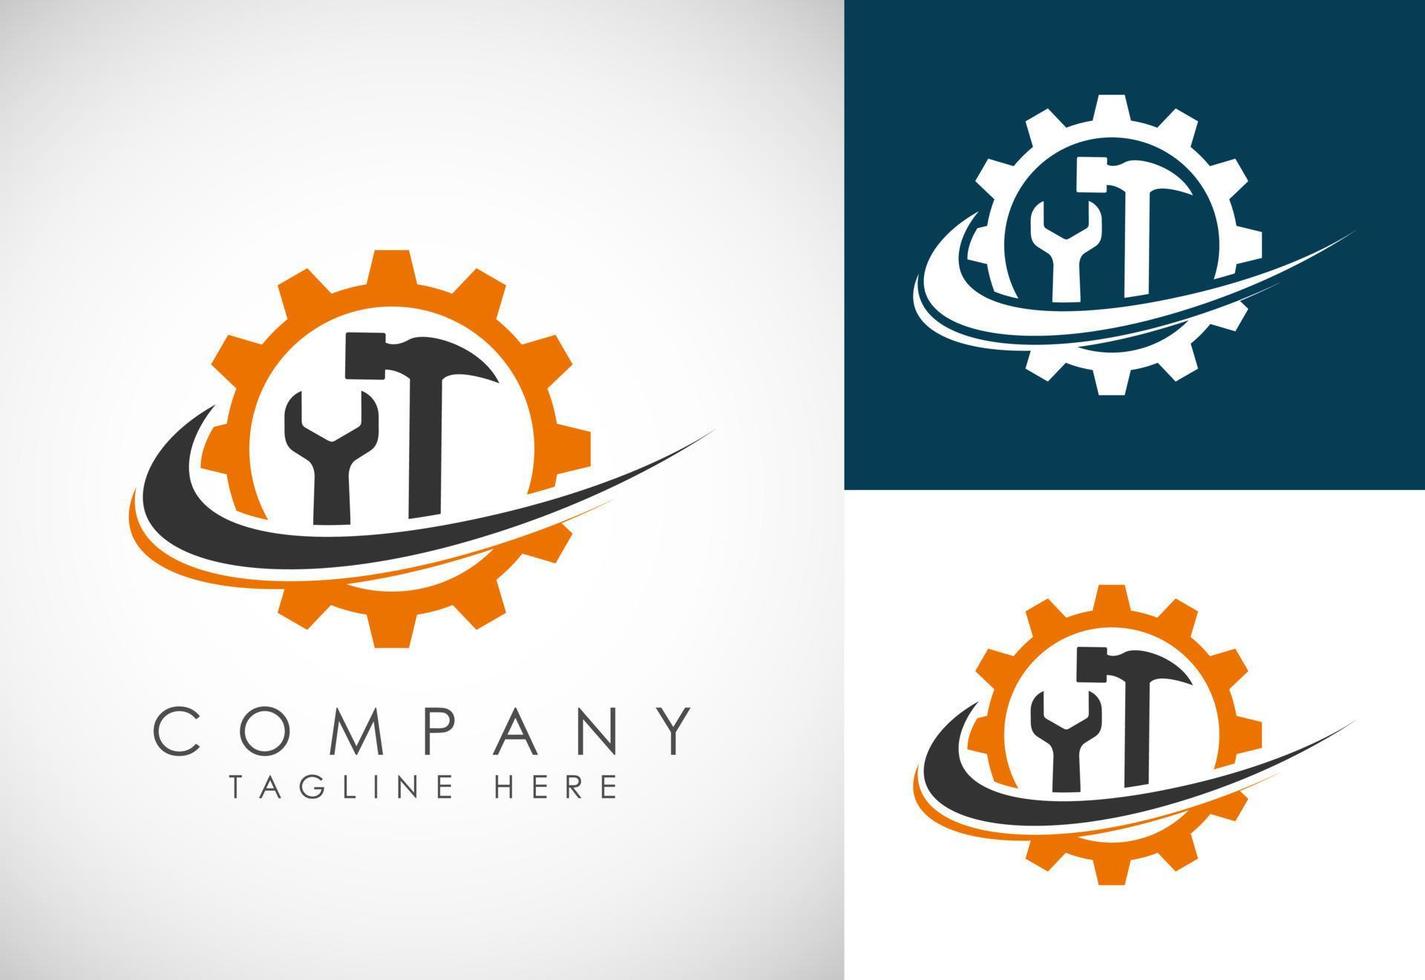 industriale logo design concetto. aziendale logo per produzione o servizio e Manutenzione attività commerciale. vettore